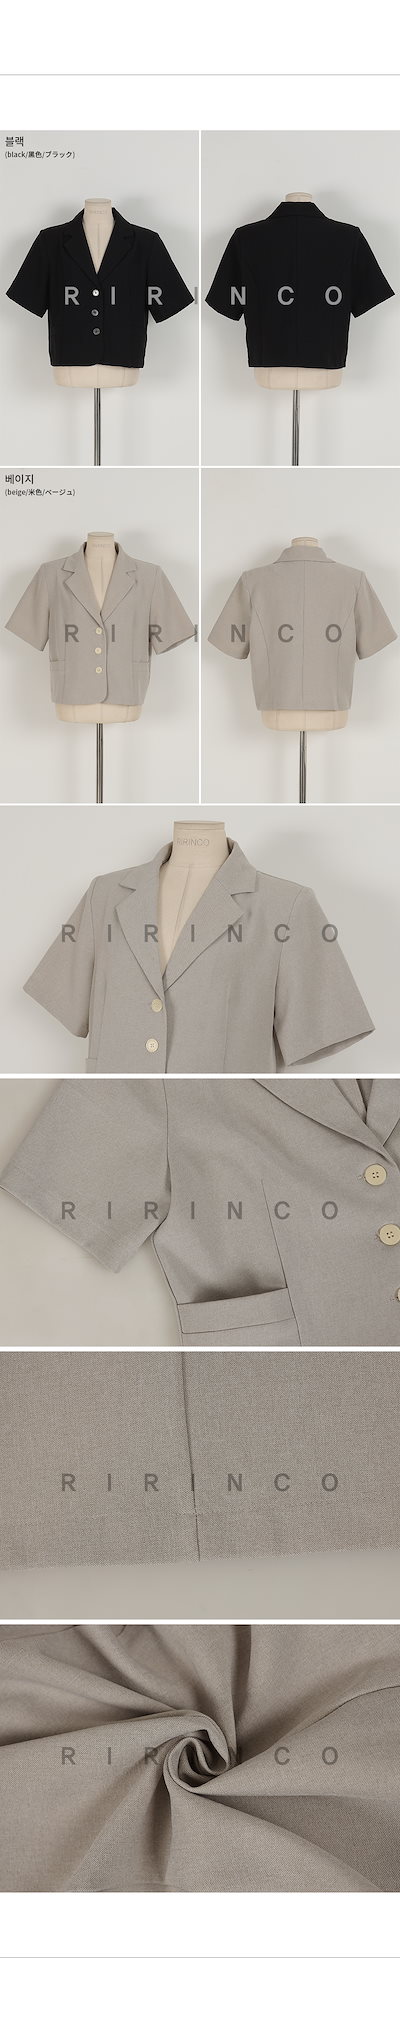 新作正規品 RIRINCO : ショート ポケット テーラードジャケット : レディース服 定番再入荷